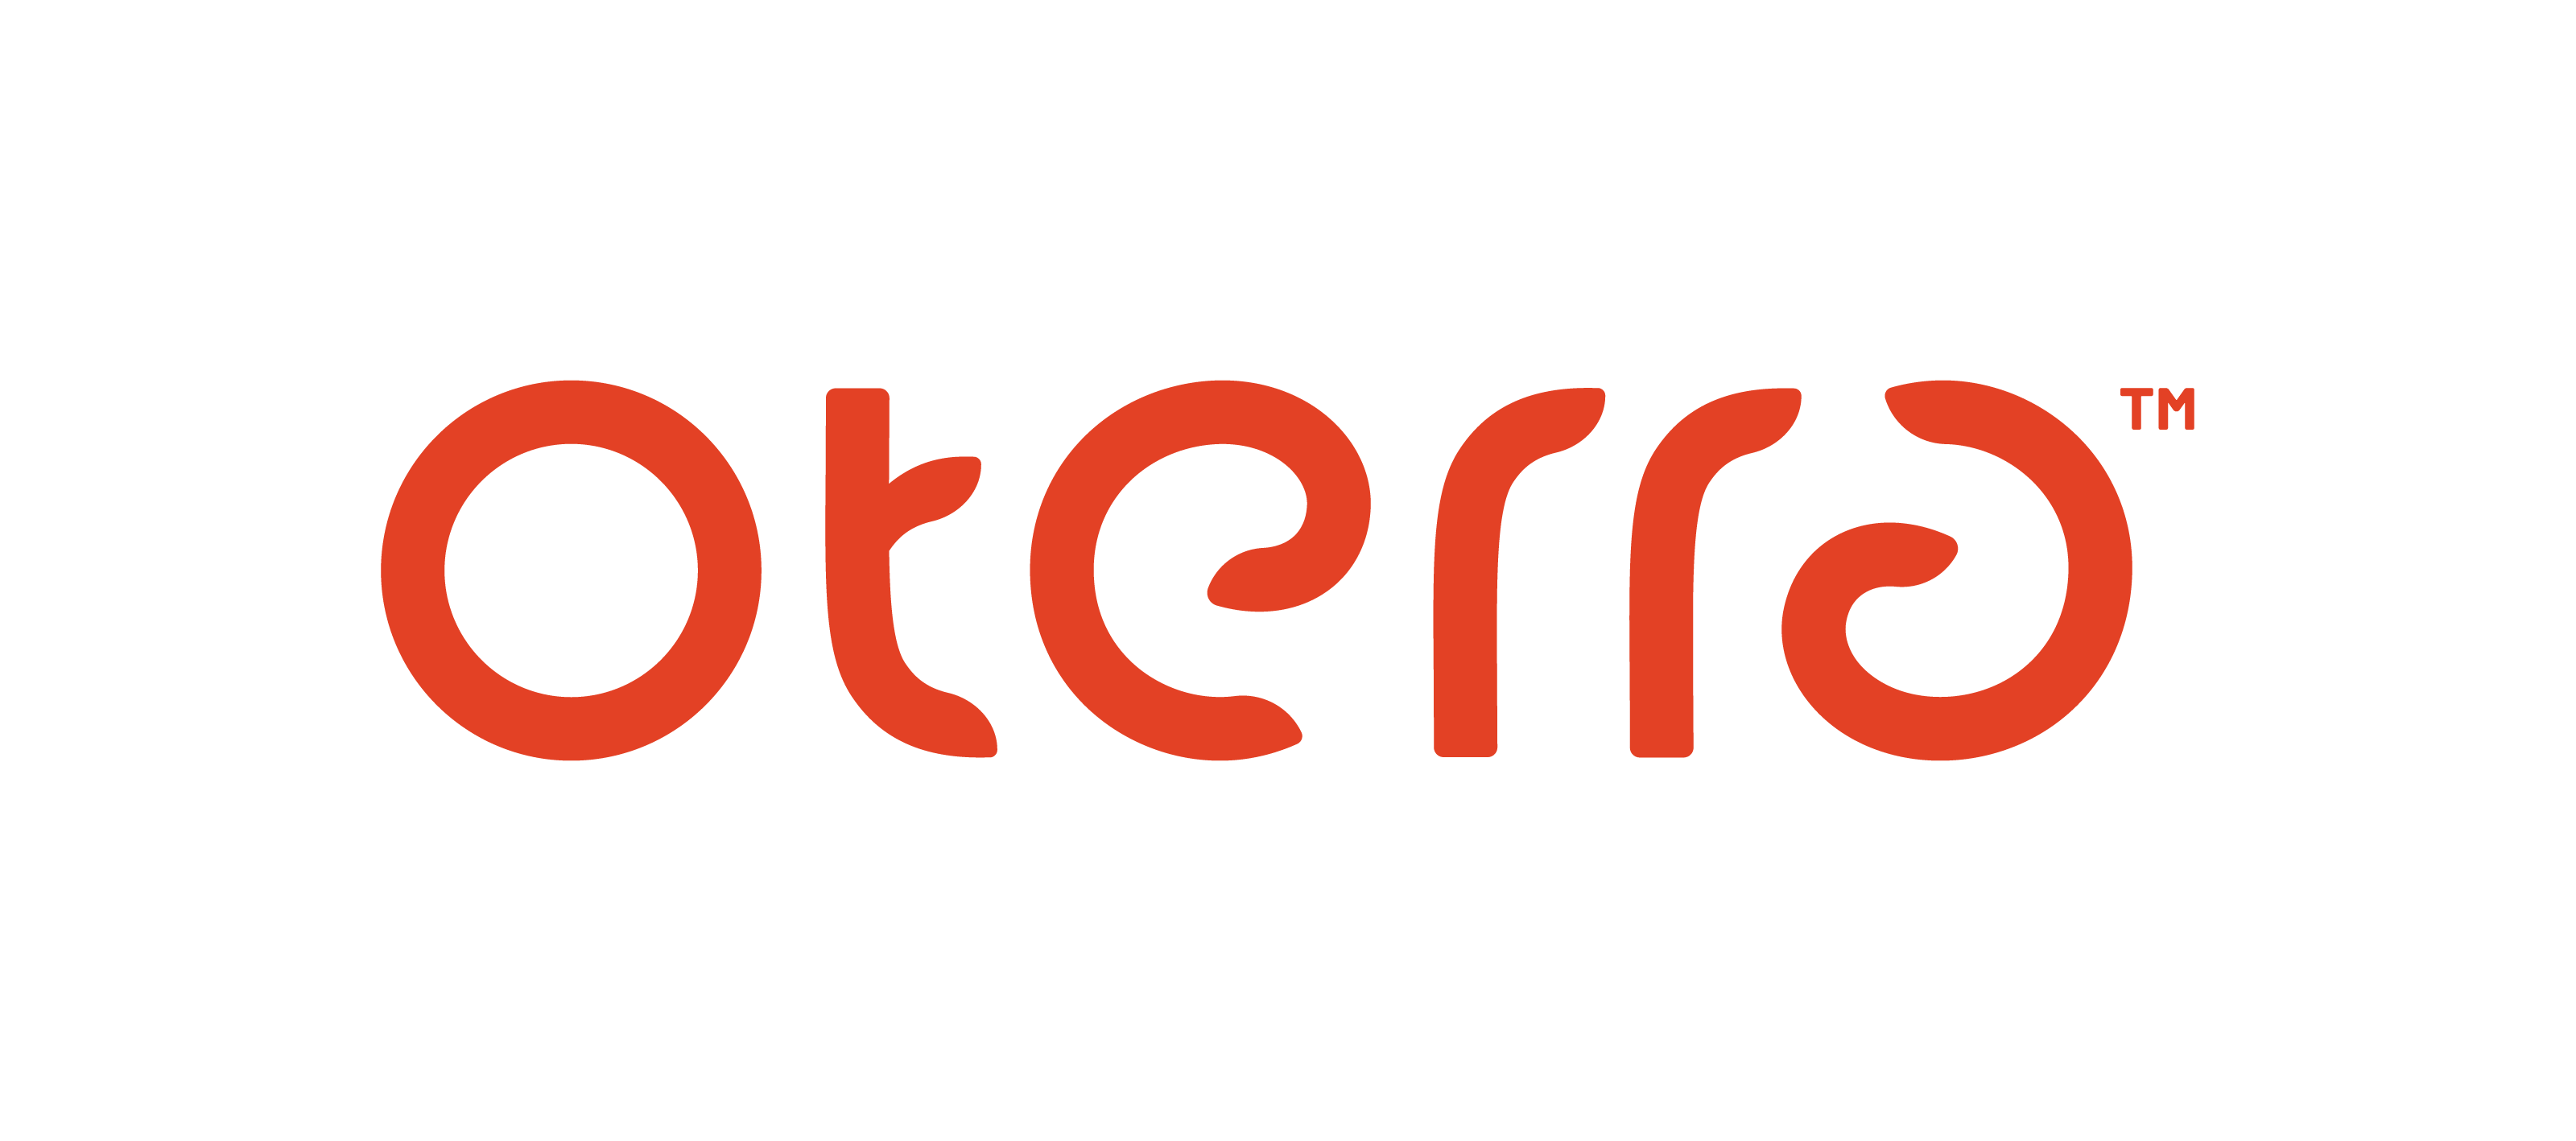 Oterra 為殷拓集團併購 Chr Hansen 天然色素部門，專注高品質天然色素的新事業品牌